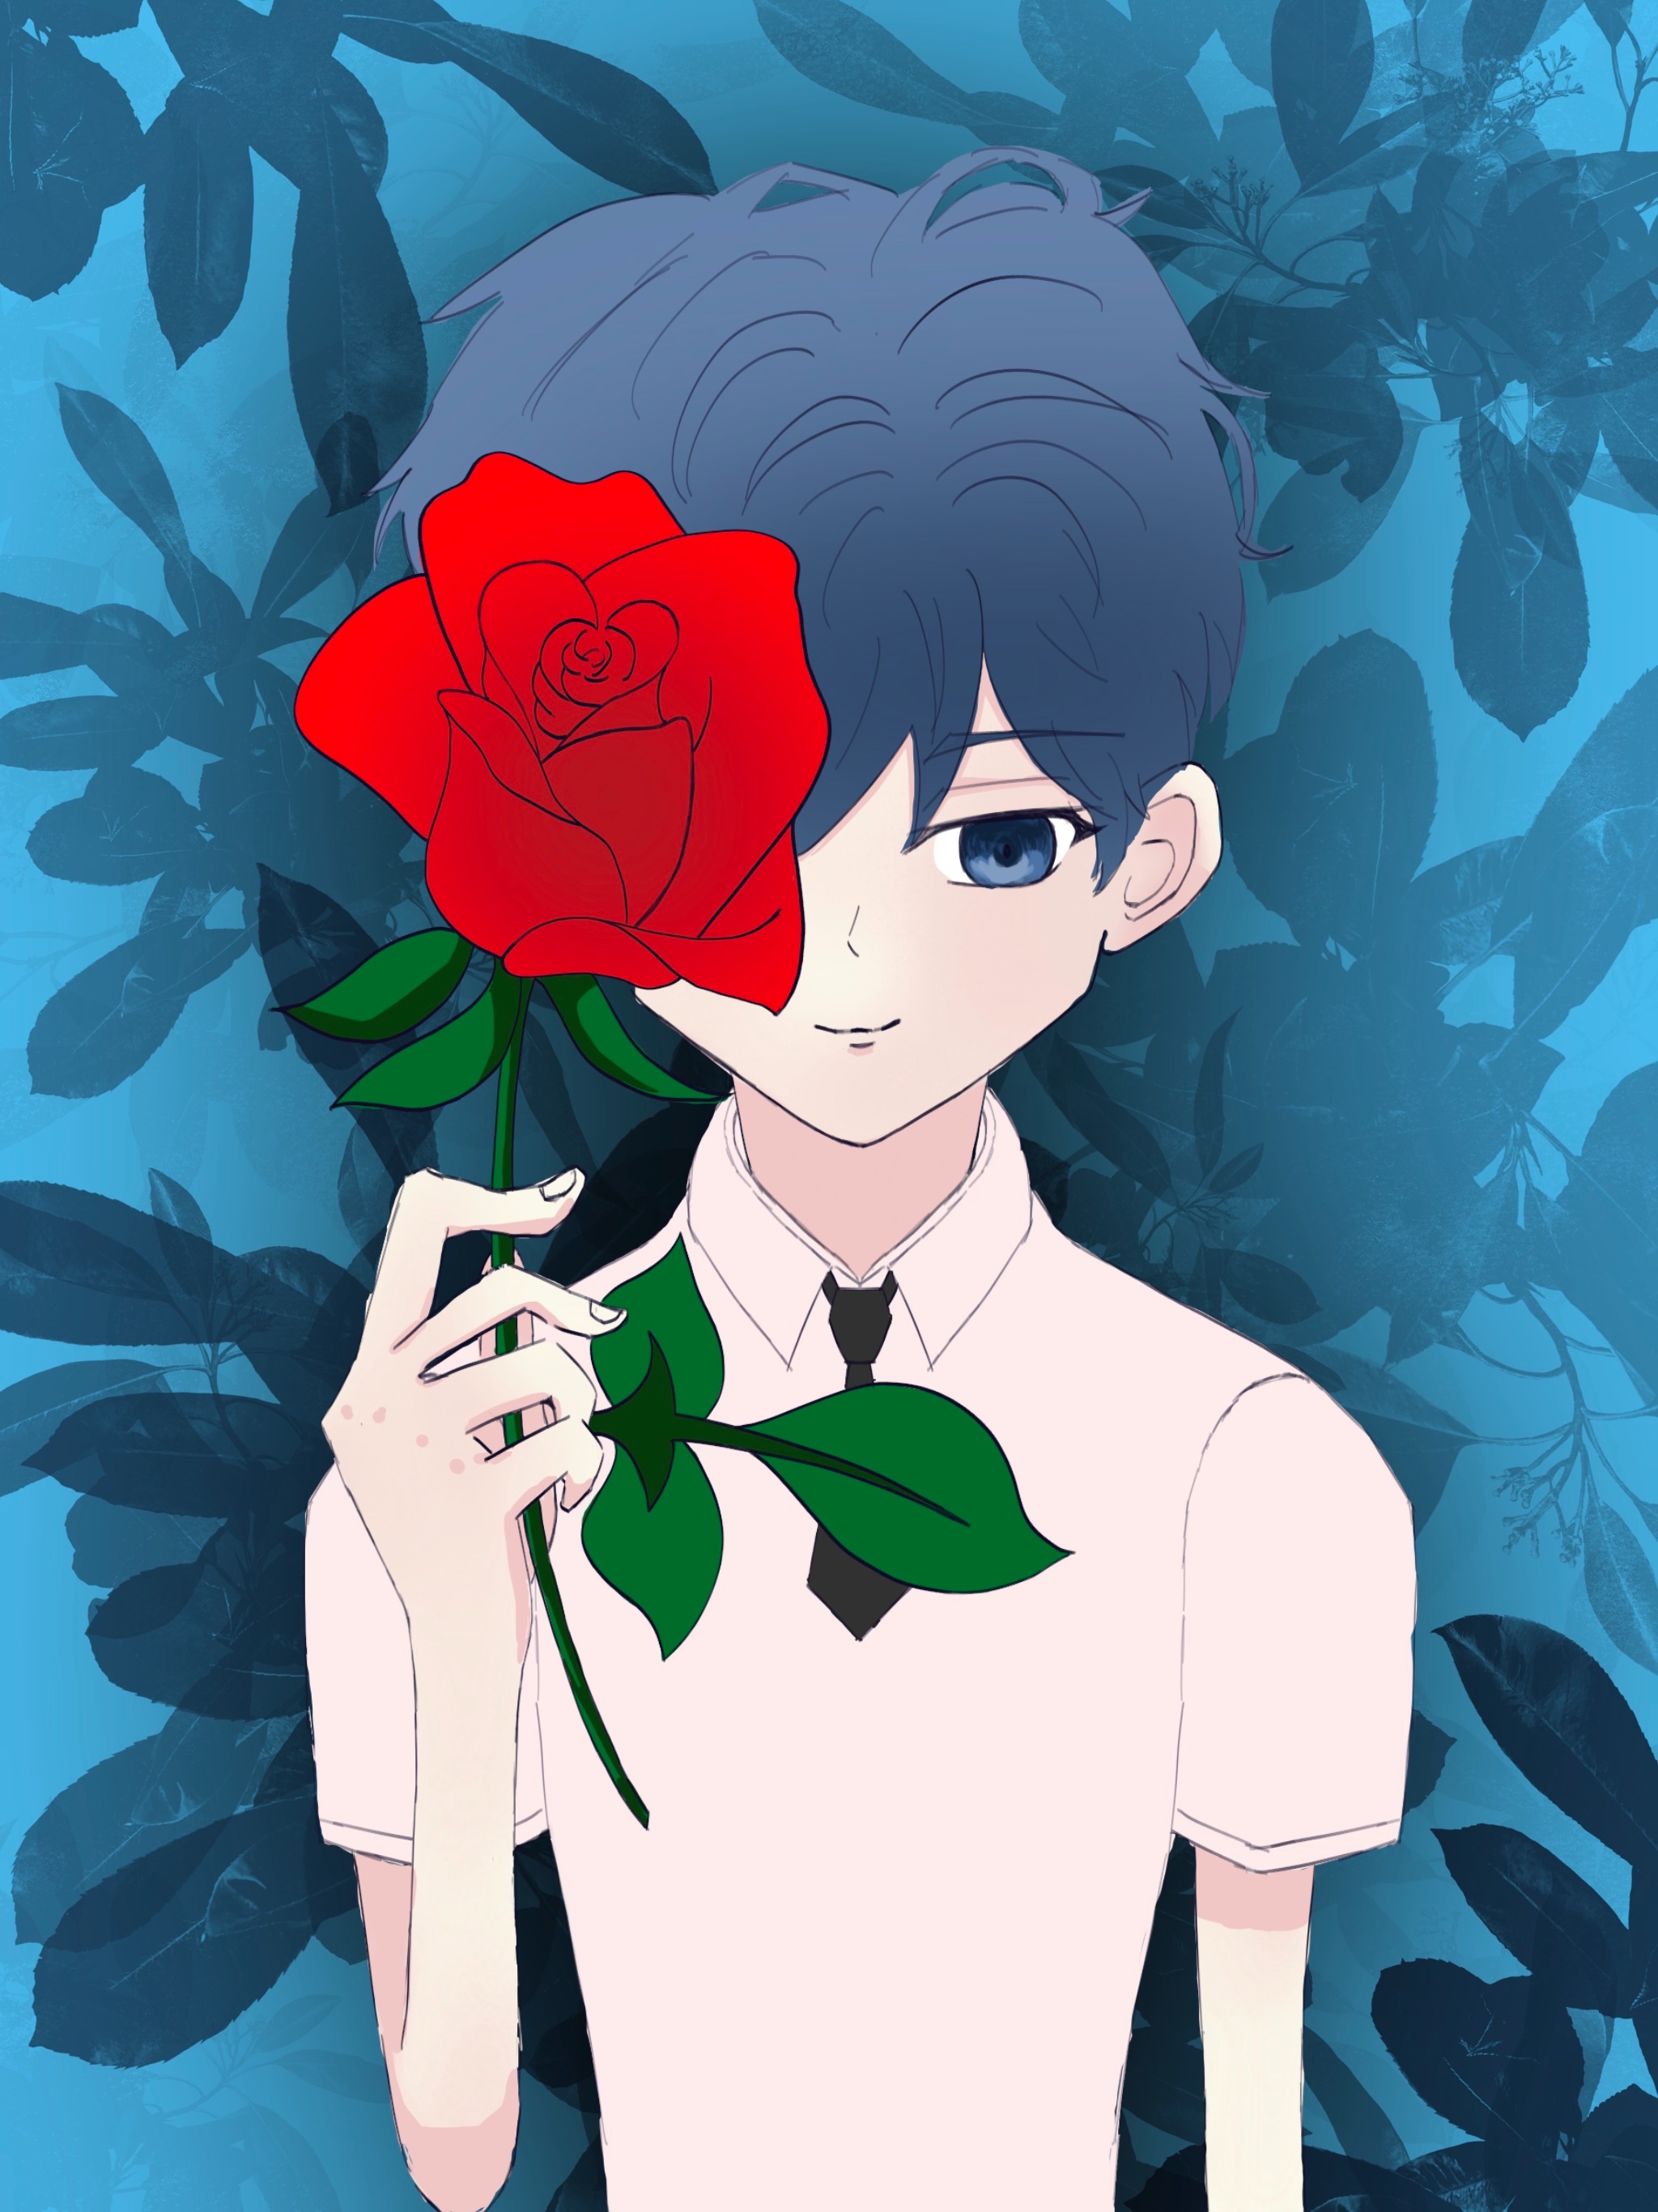 少年与玫瑰